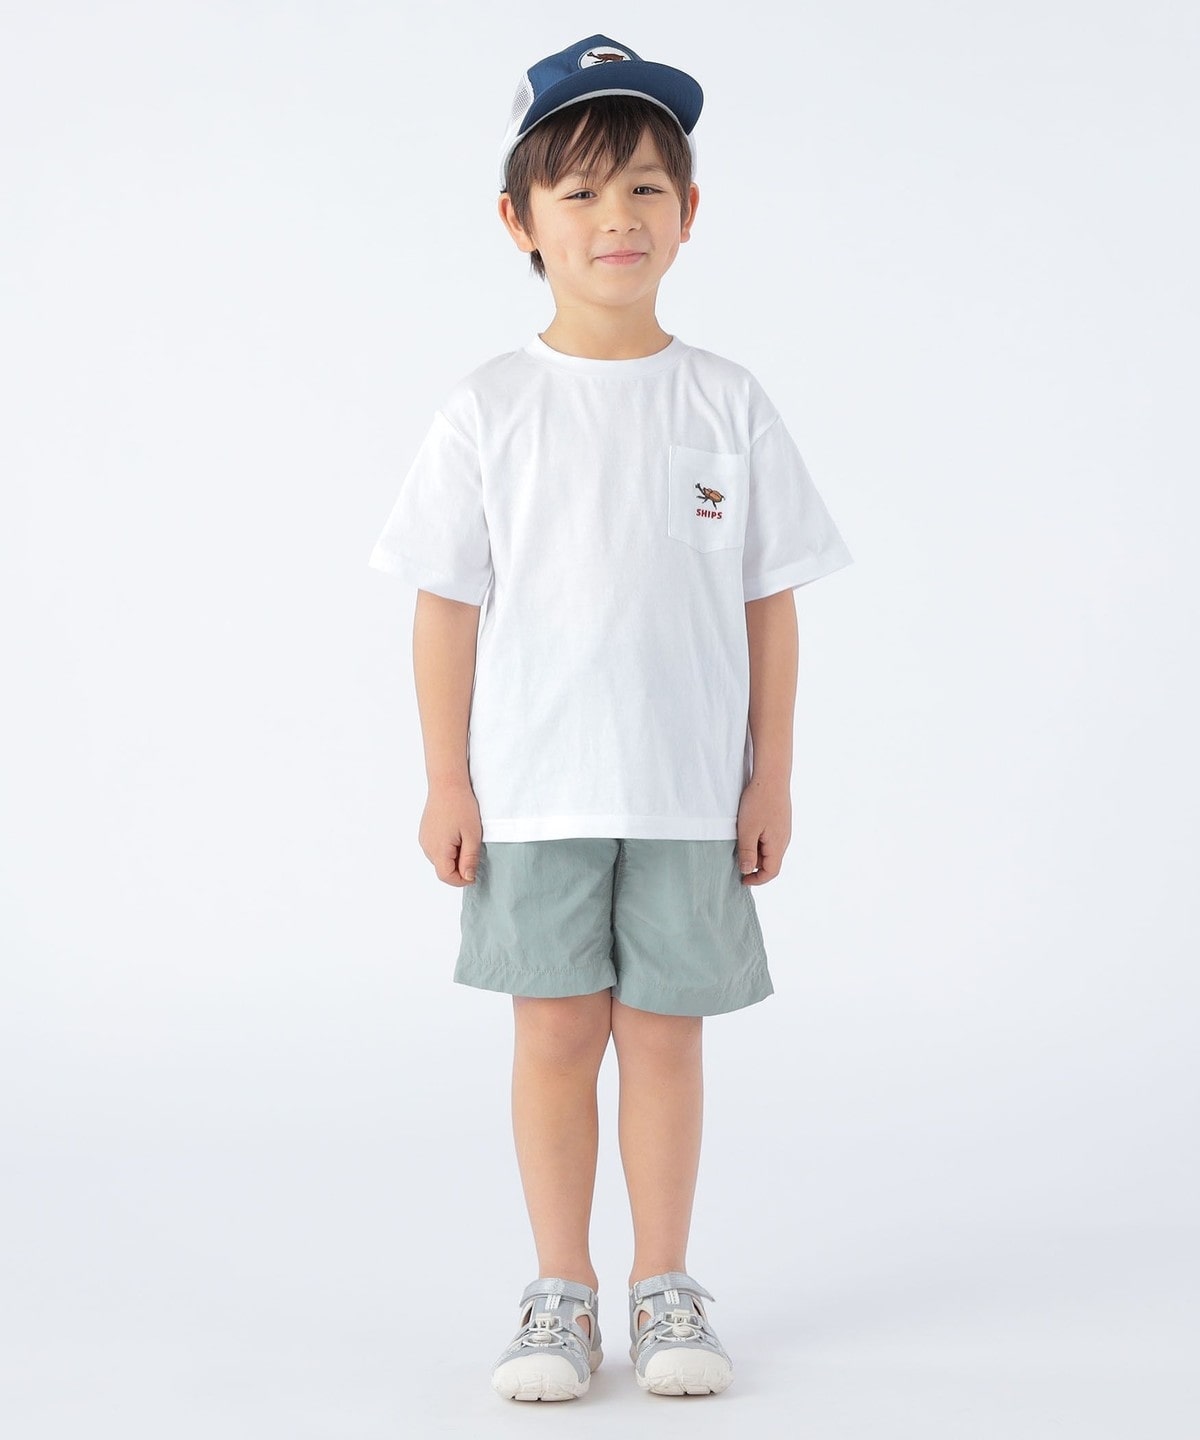 SHIPS KIDS:100～130cm / ワンポイント 刺繍 ポケット TEE: Tシャツ 